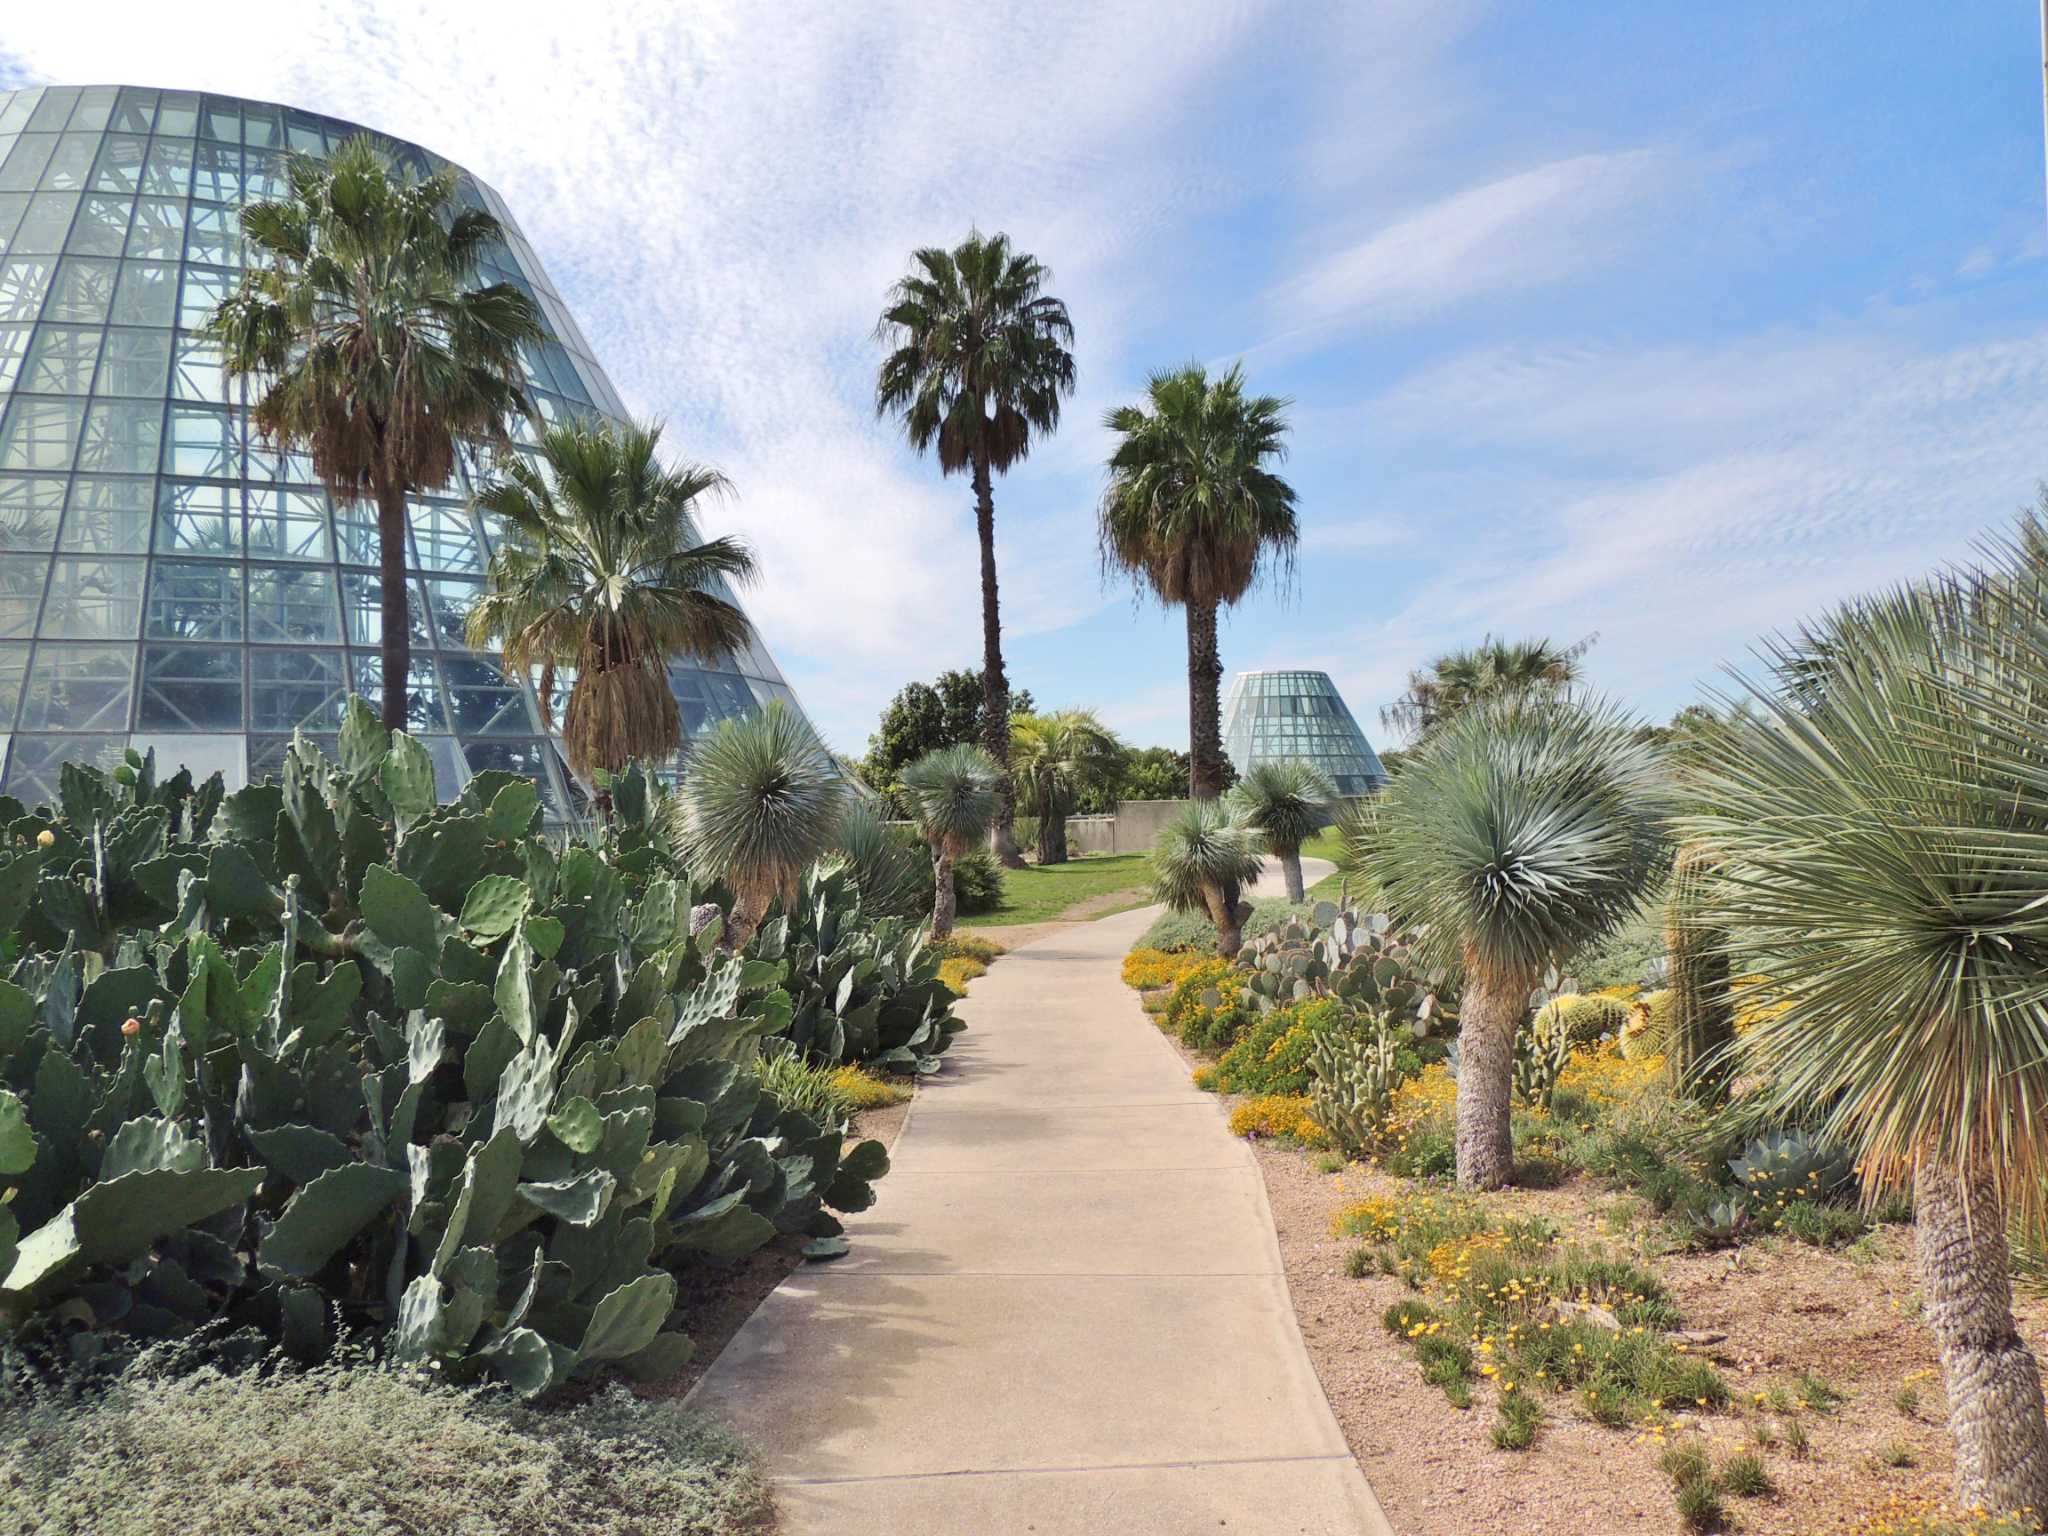 Idea for San Antonio Botanical Garden planted decades before 1980